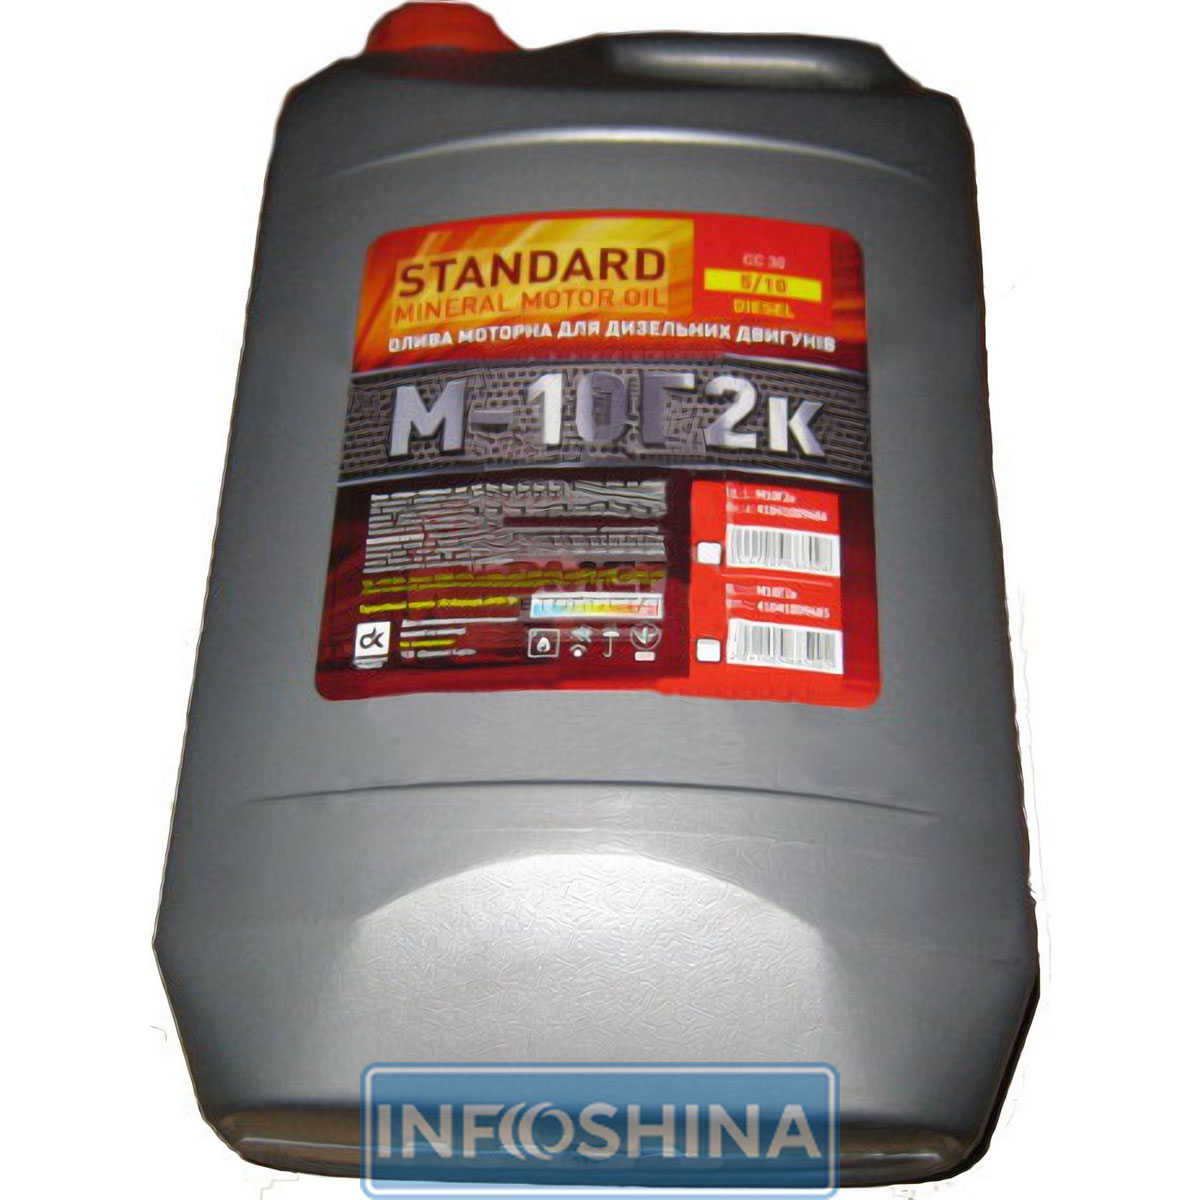 Купити масло ДК М-10Г2к Standard (5л)